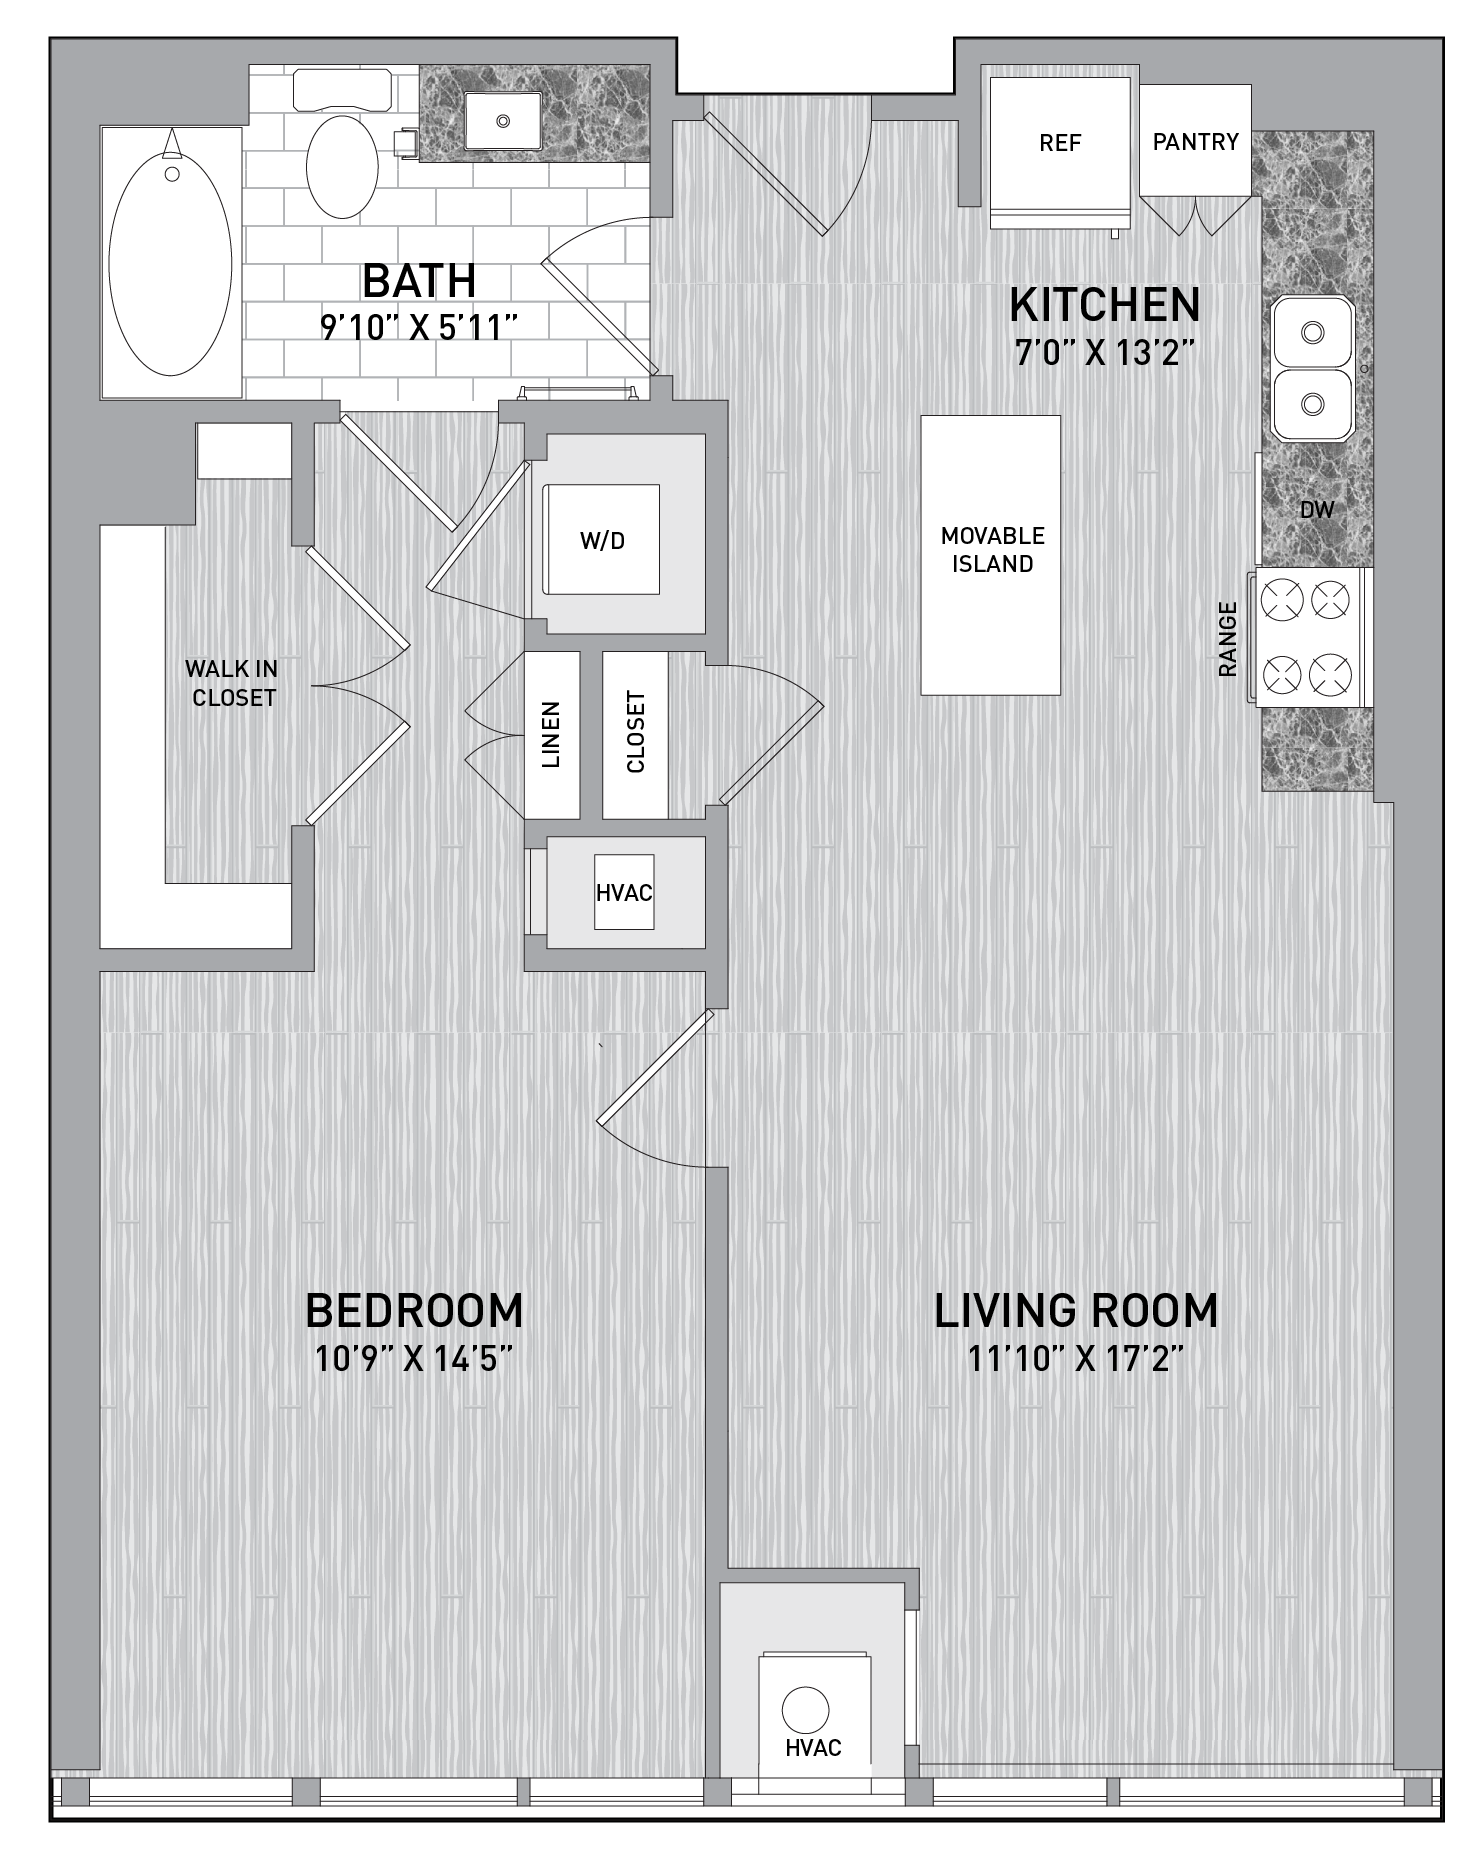 floorplan image of unit id 0714